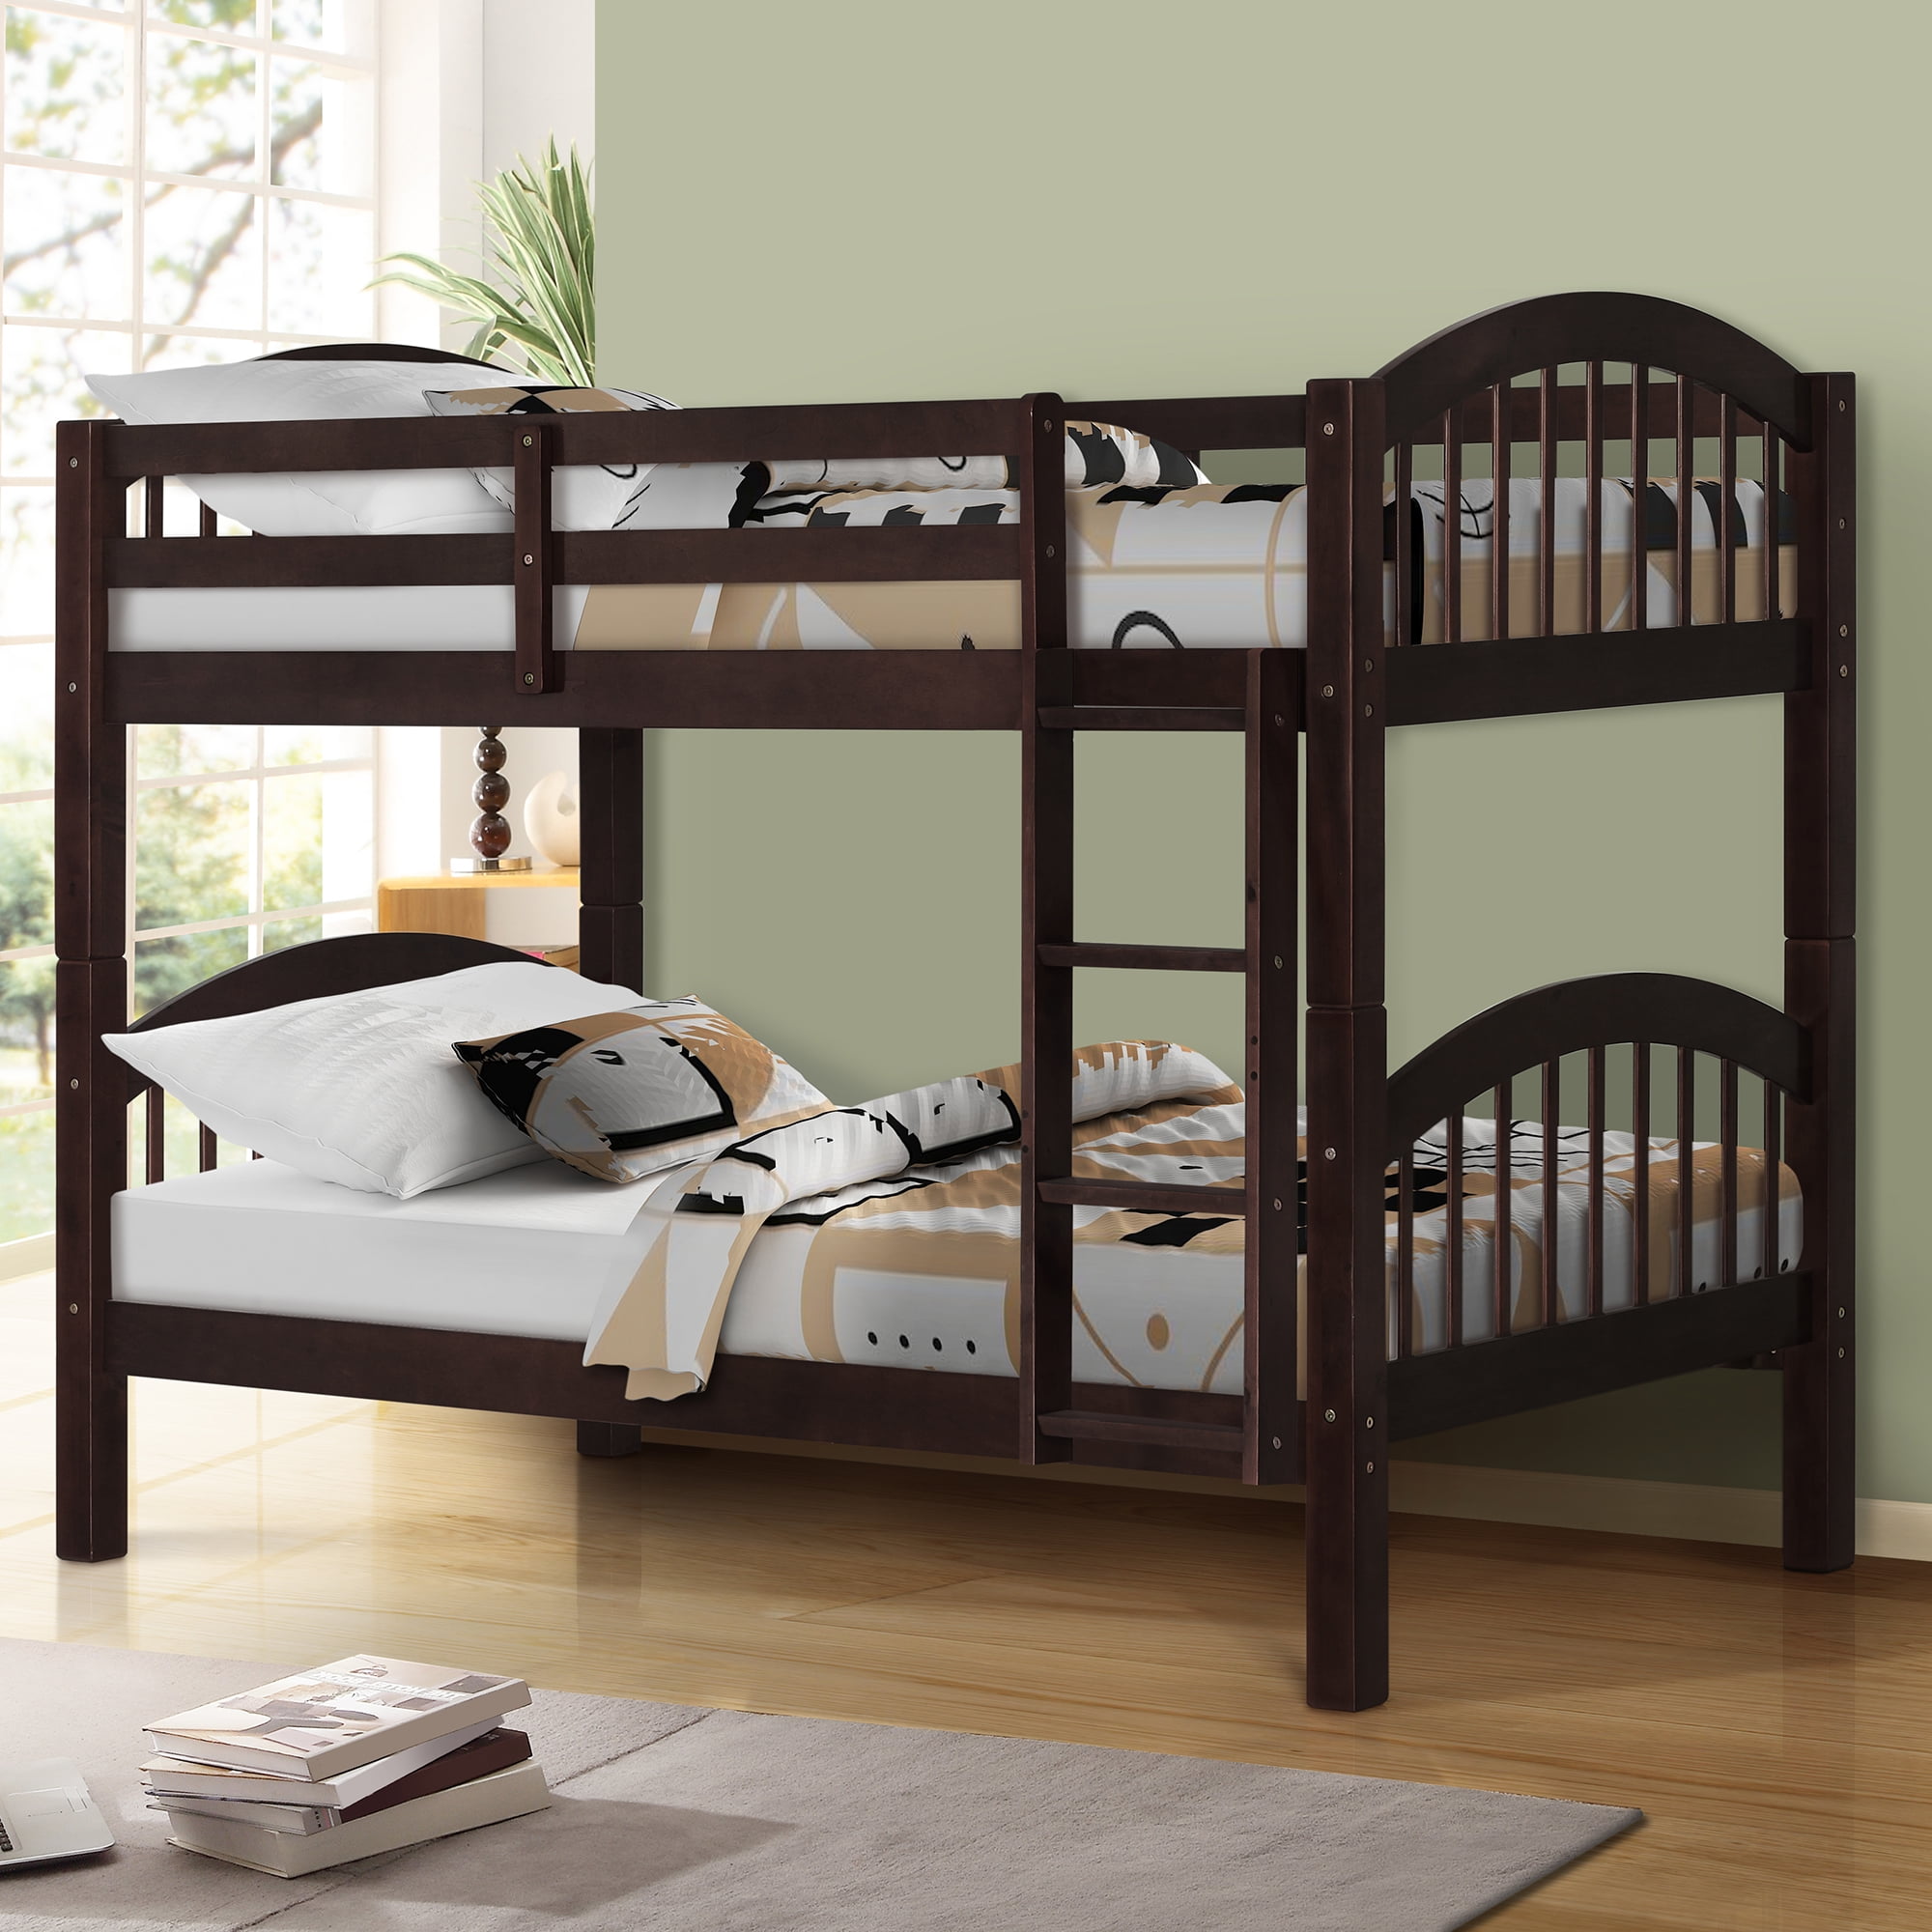 Espresso Harper/&Bright Designs Twin Bed Frame for Kids